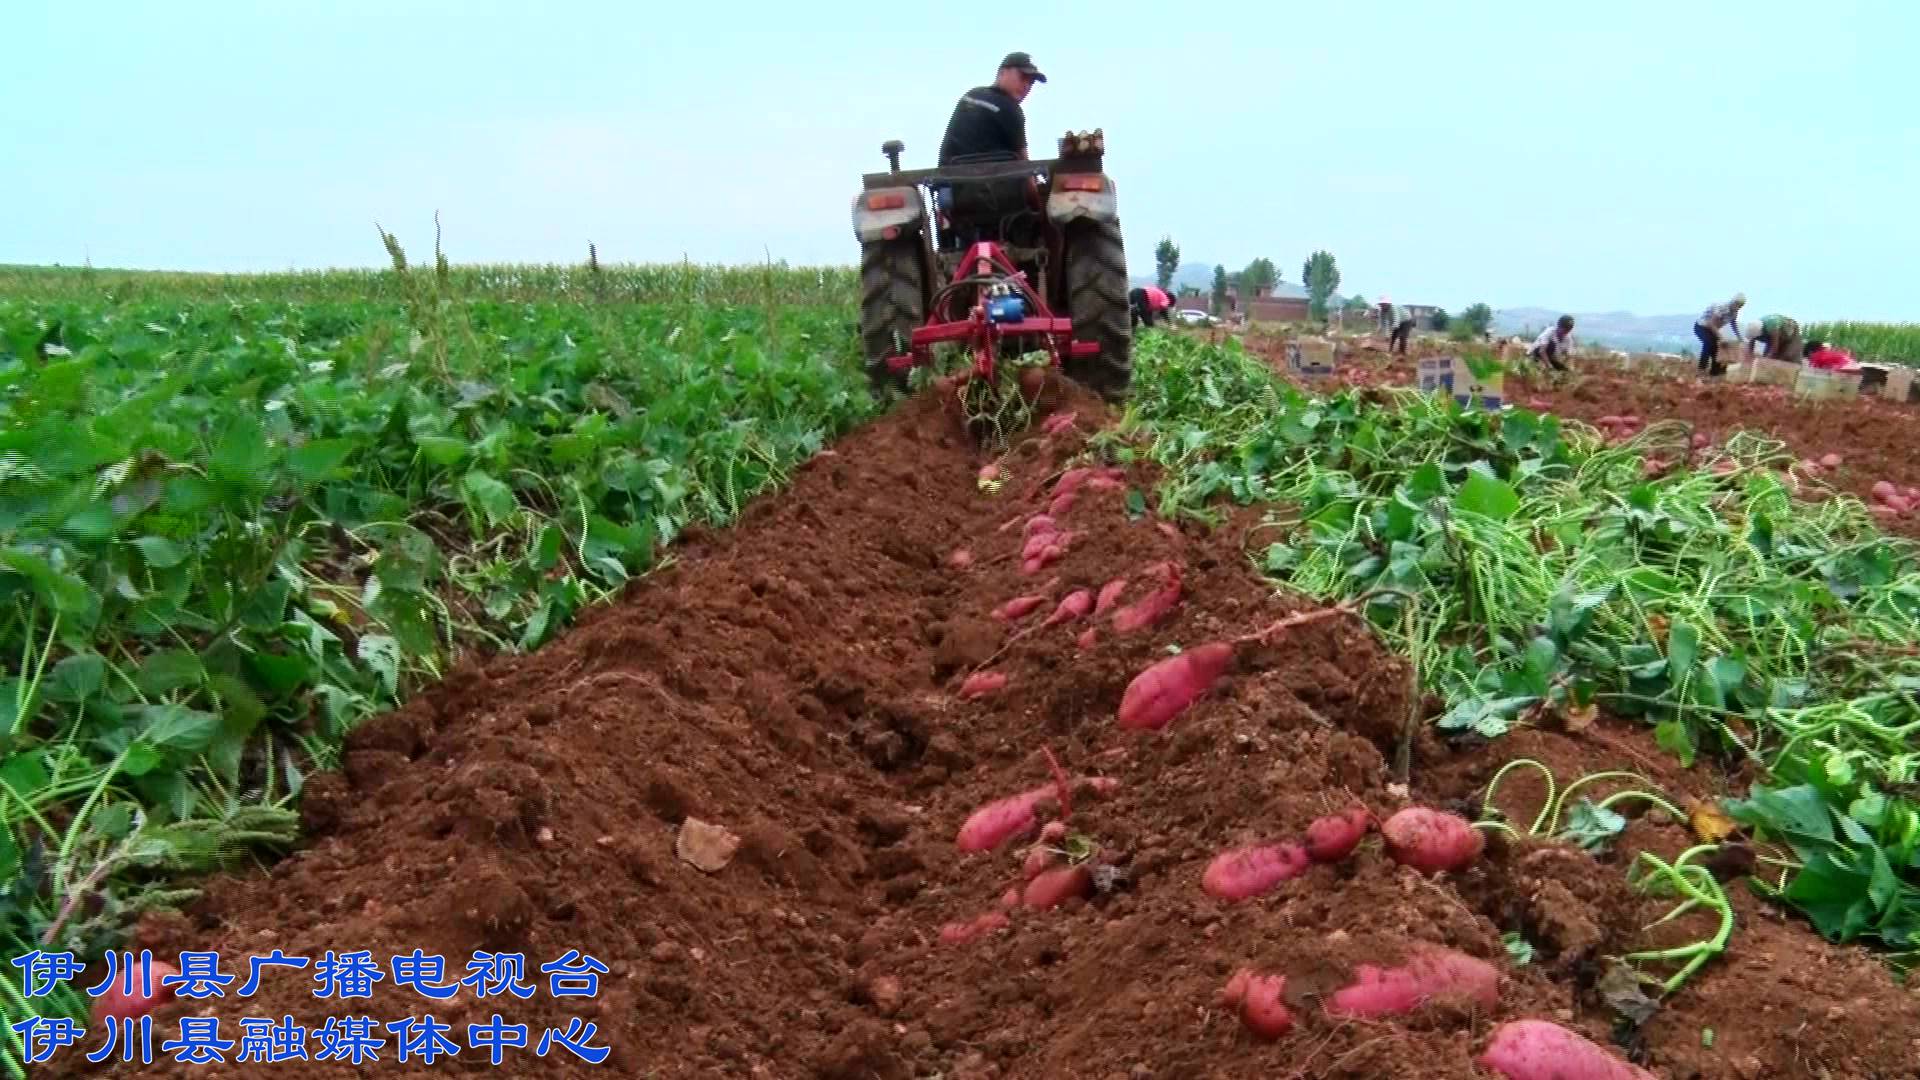 伊川高山:规模种植让红薯